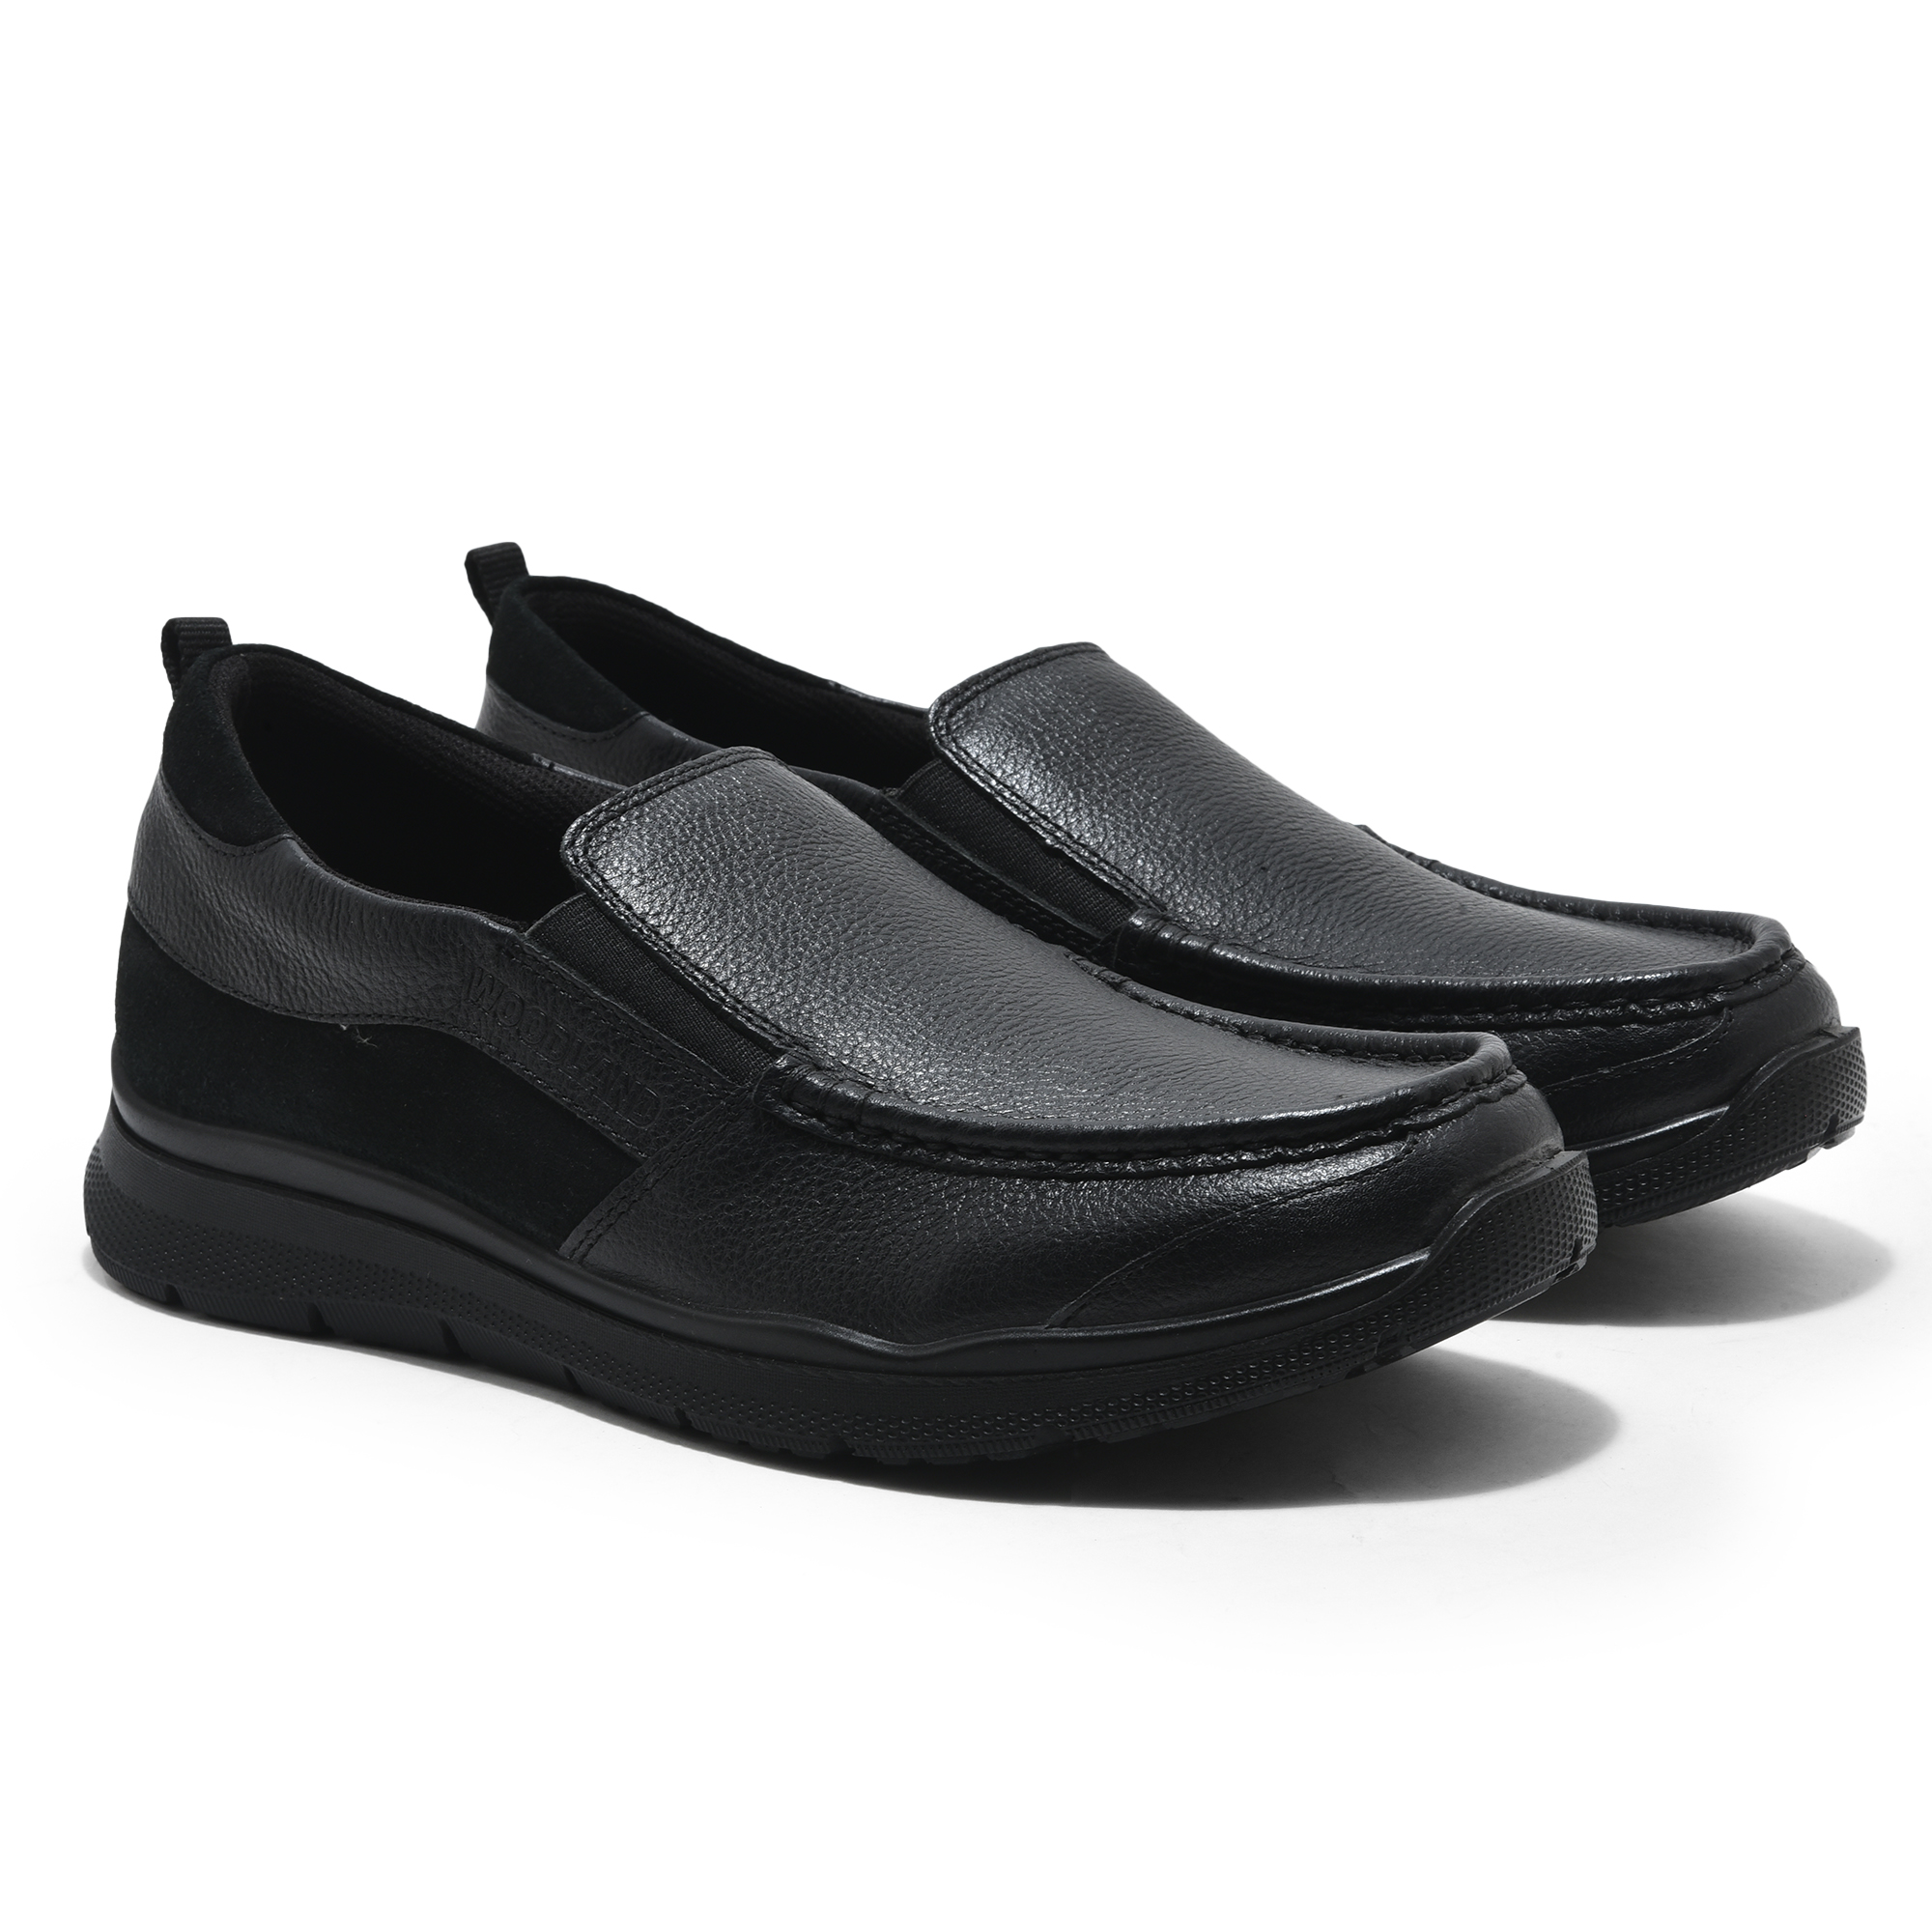 Black loafer for men